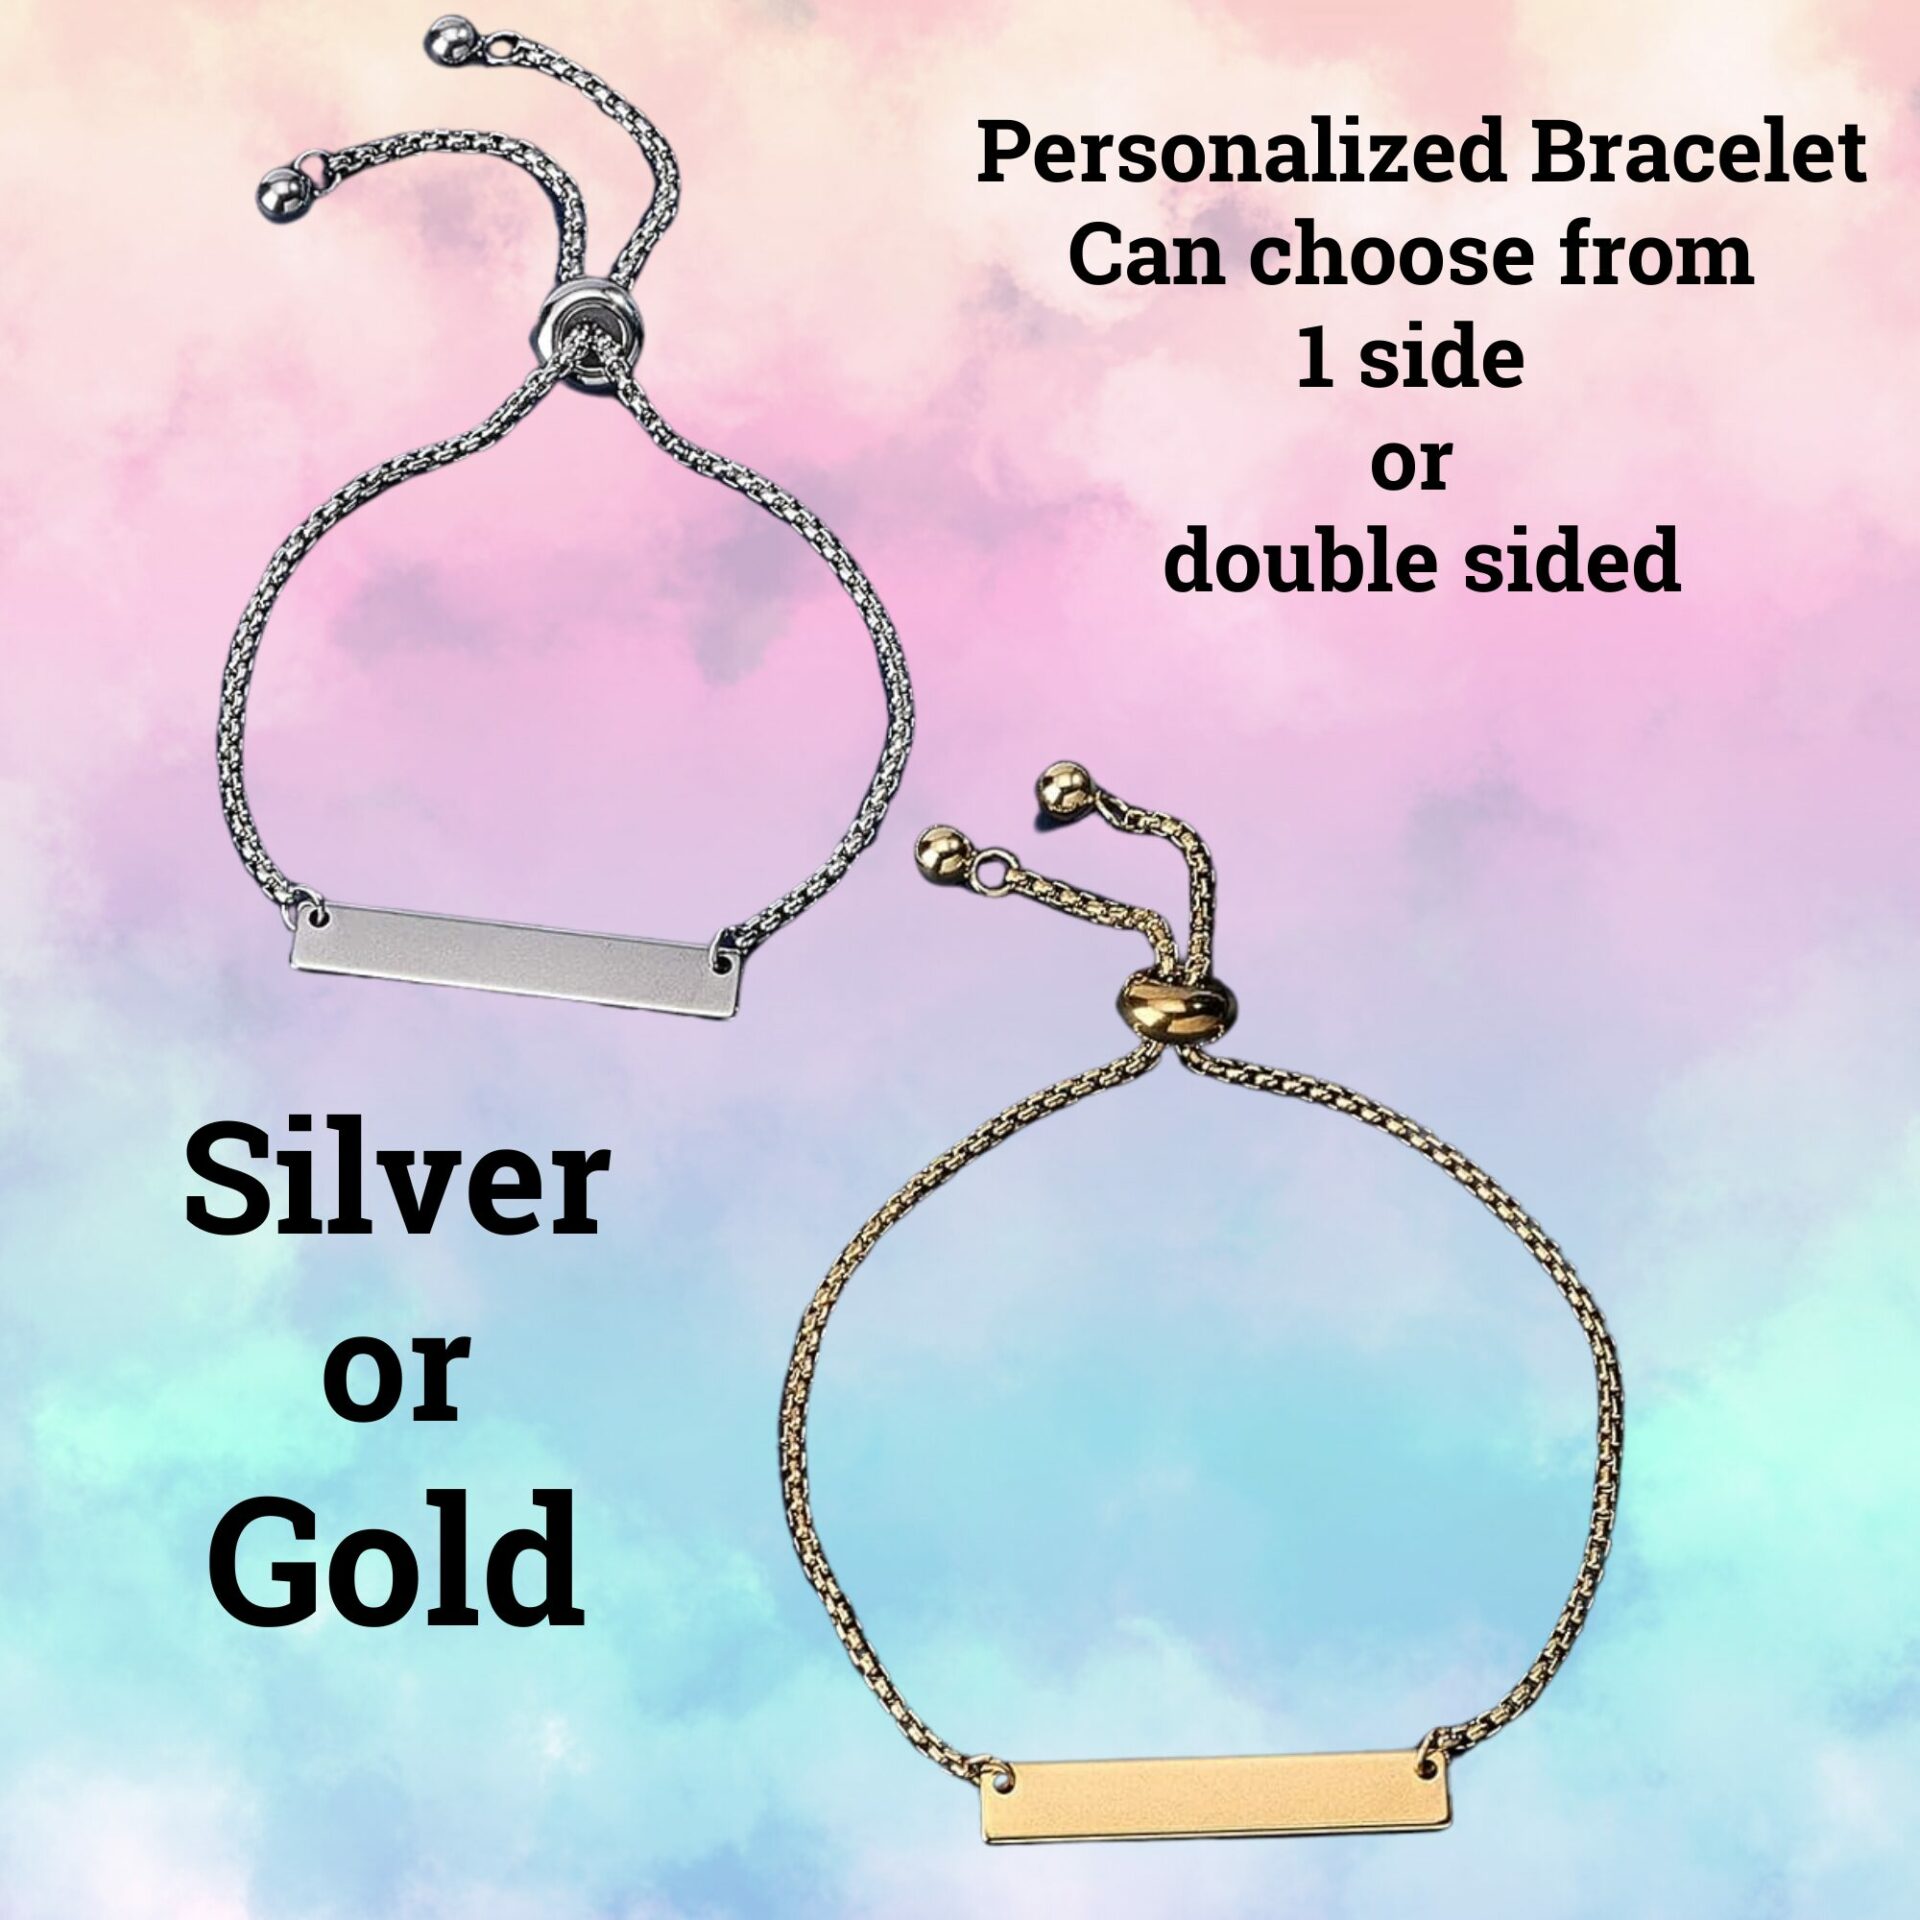 Personalized Bracelets